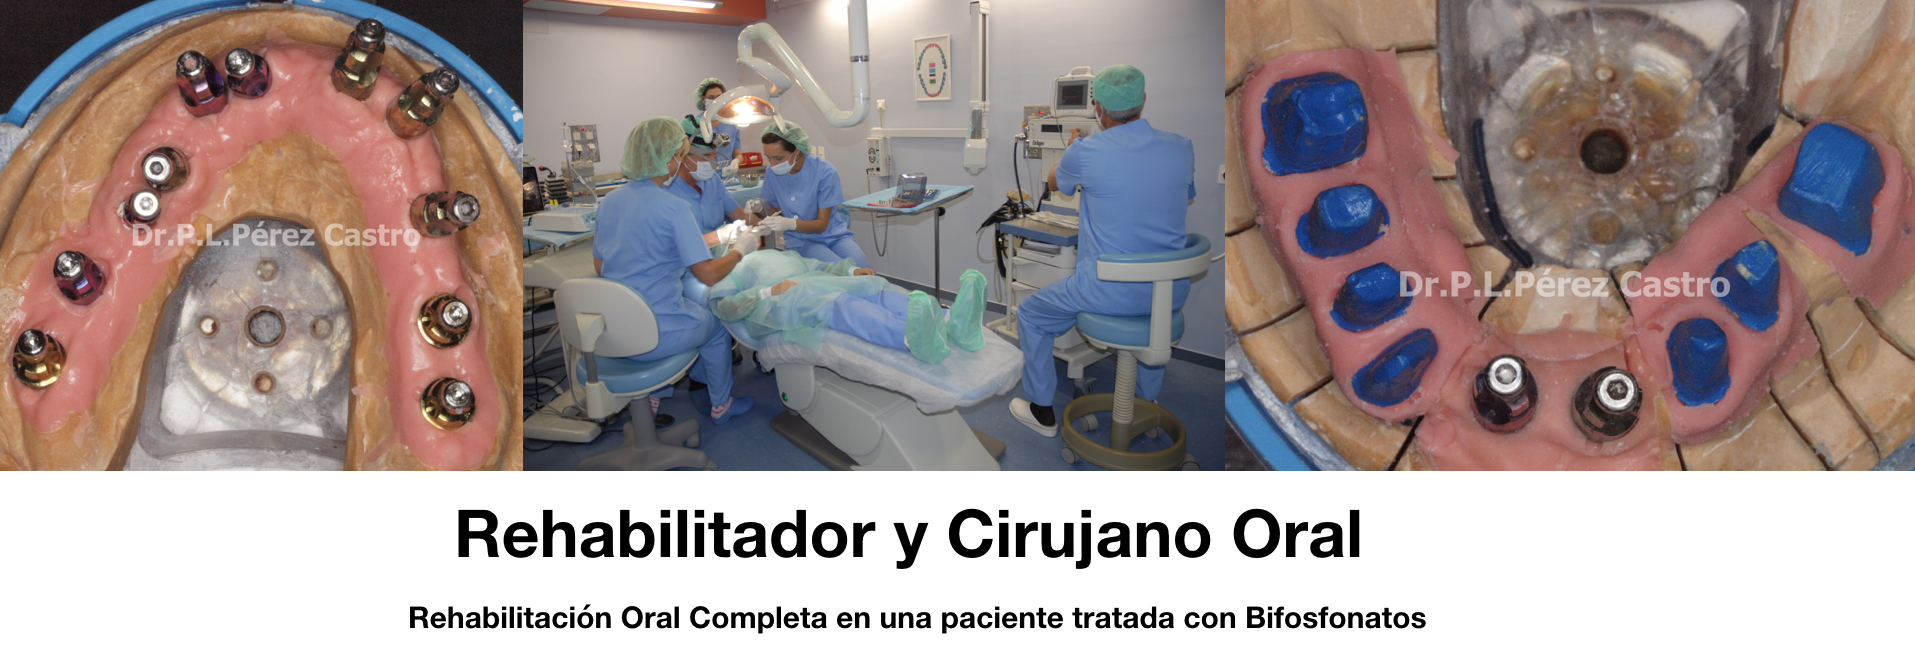 Artículo 5 – Bifosfonatos y Rehabilitación Oral 2ª Parte.